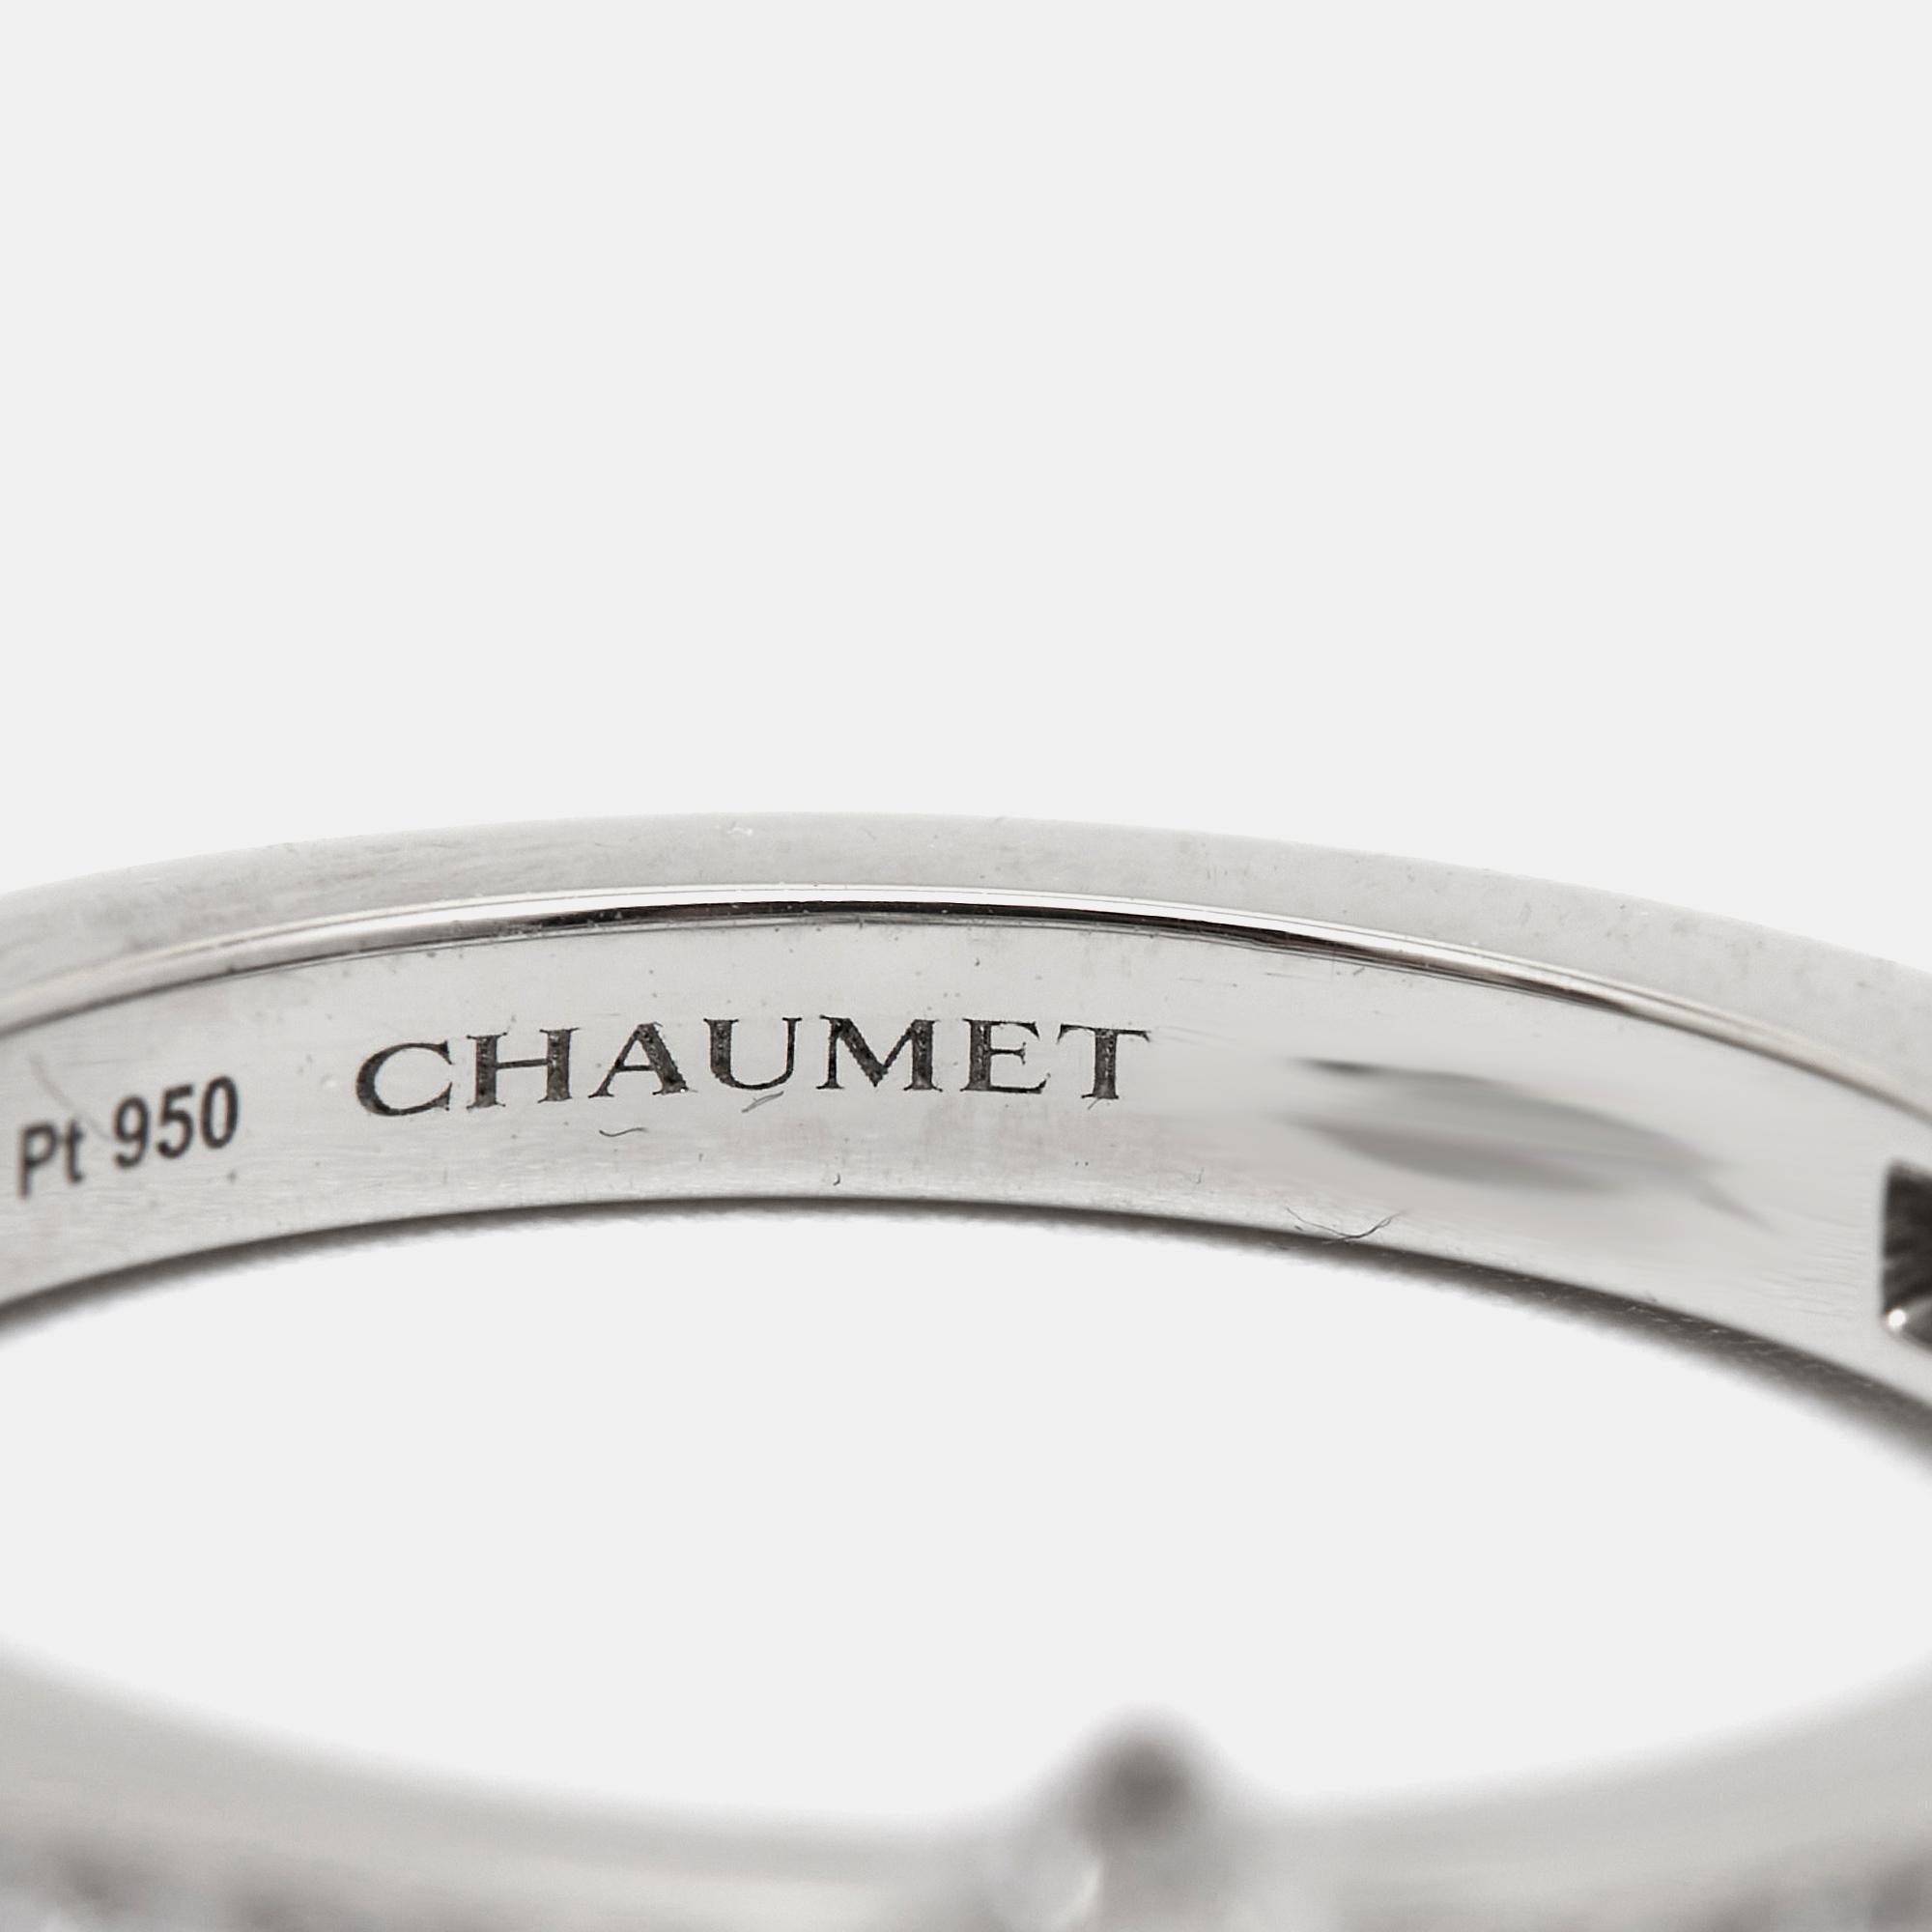 Erleben Sie den Glanz des Chaumet Rings Triomphe de Chaumet, ein Meisterwerk der Handwerkskunst und Schönheit. Dieses exquisite Stück zeigt eine schillernde Reihe von Diamanten, die in glänzendes Platin gefasst sind und zeitlose Eleganz und Anmut